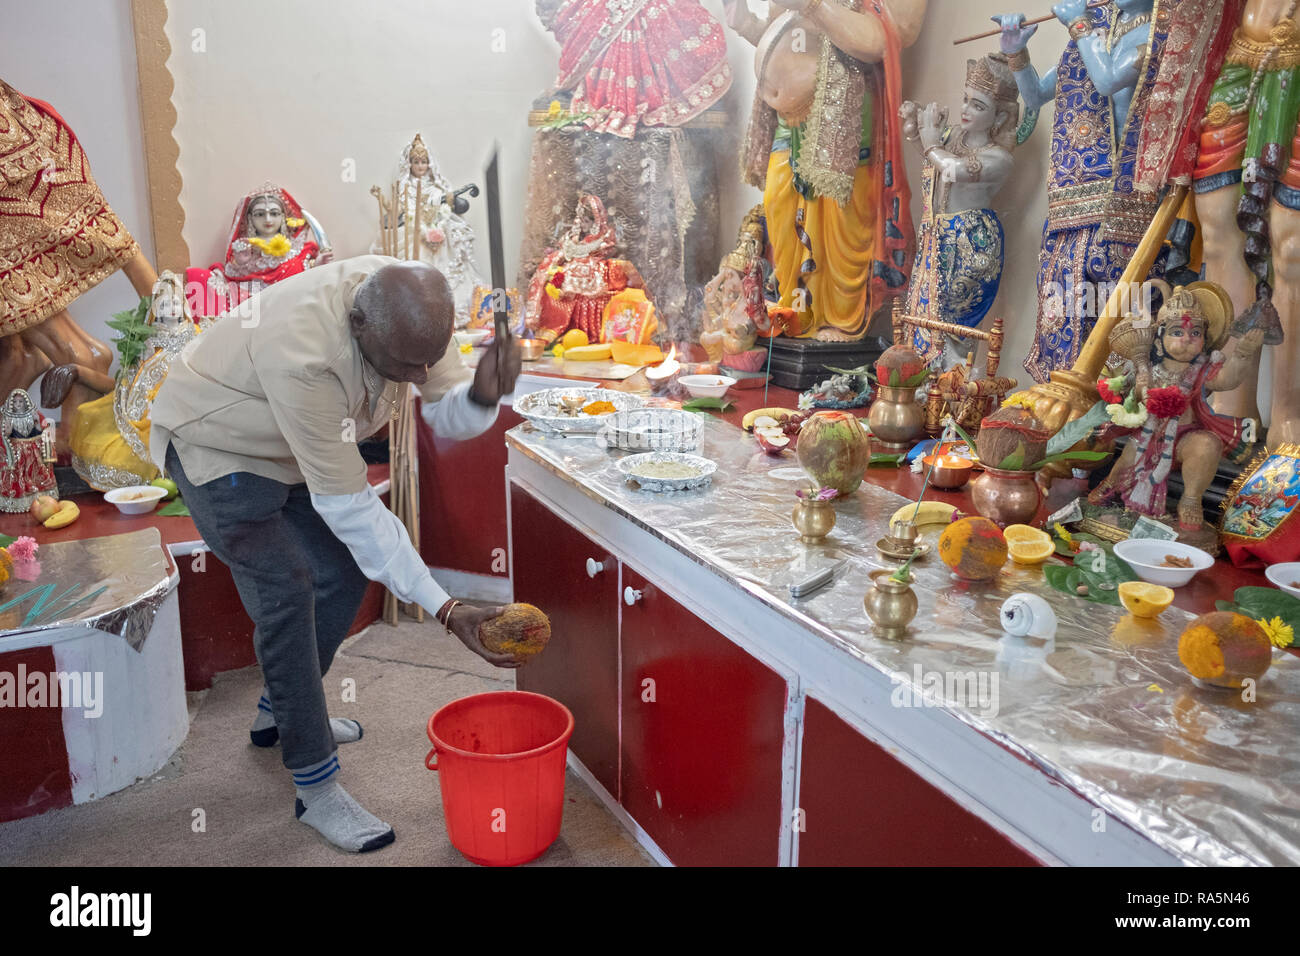 Eine ältere Hindu worshipper bricht eine Kokosnussschalen, symbolisch für das Brechen der Ego spirituellen und persönlichen Entwicklung zu erreichen. In Jamaica, Queens, New York City. Stockfoto